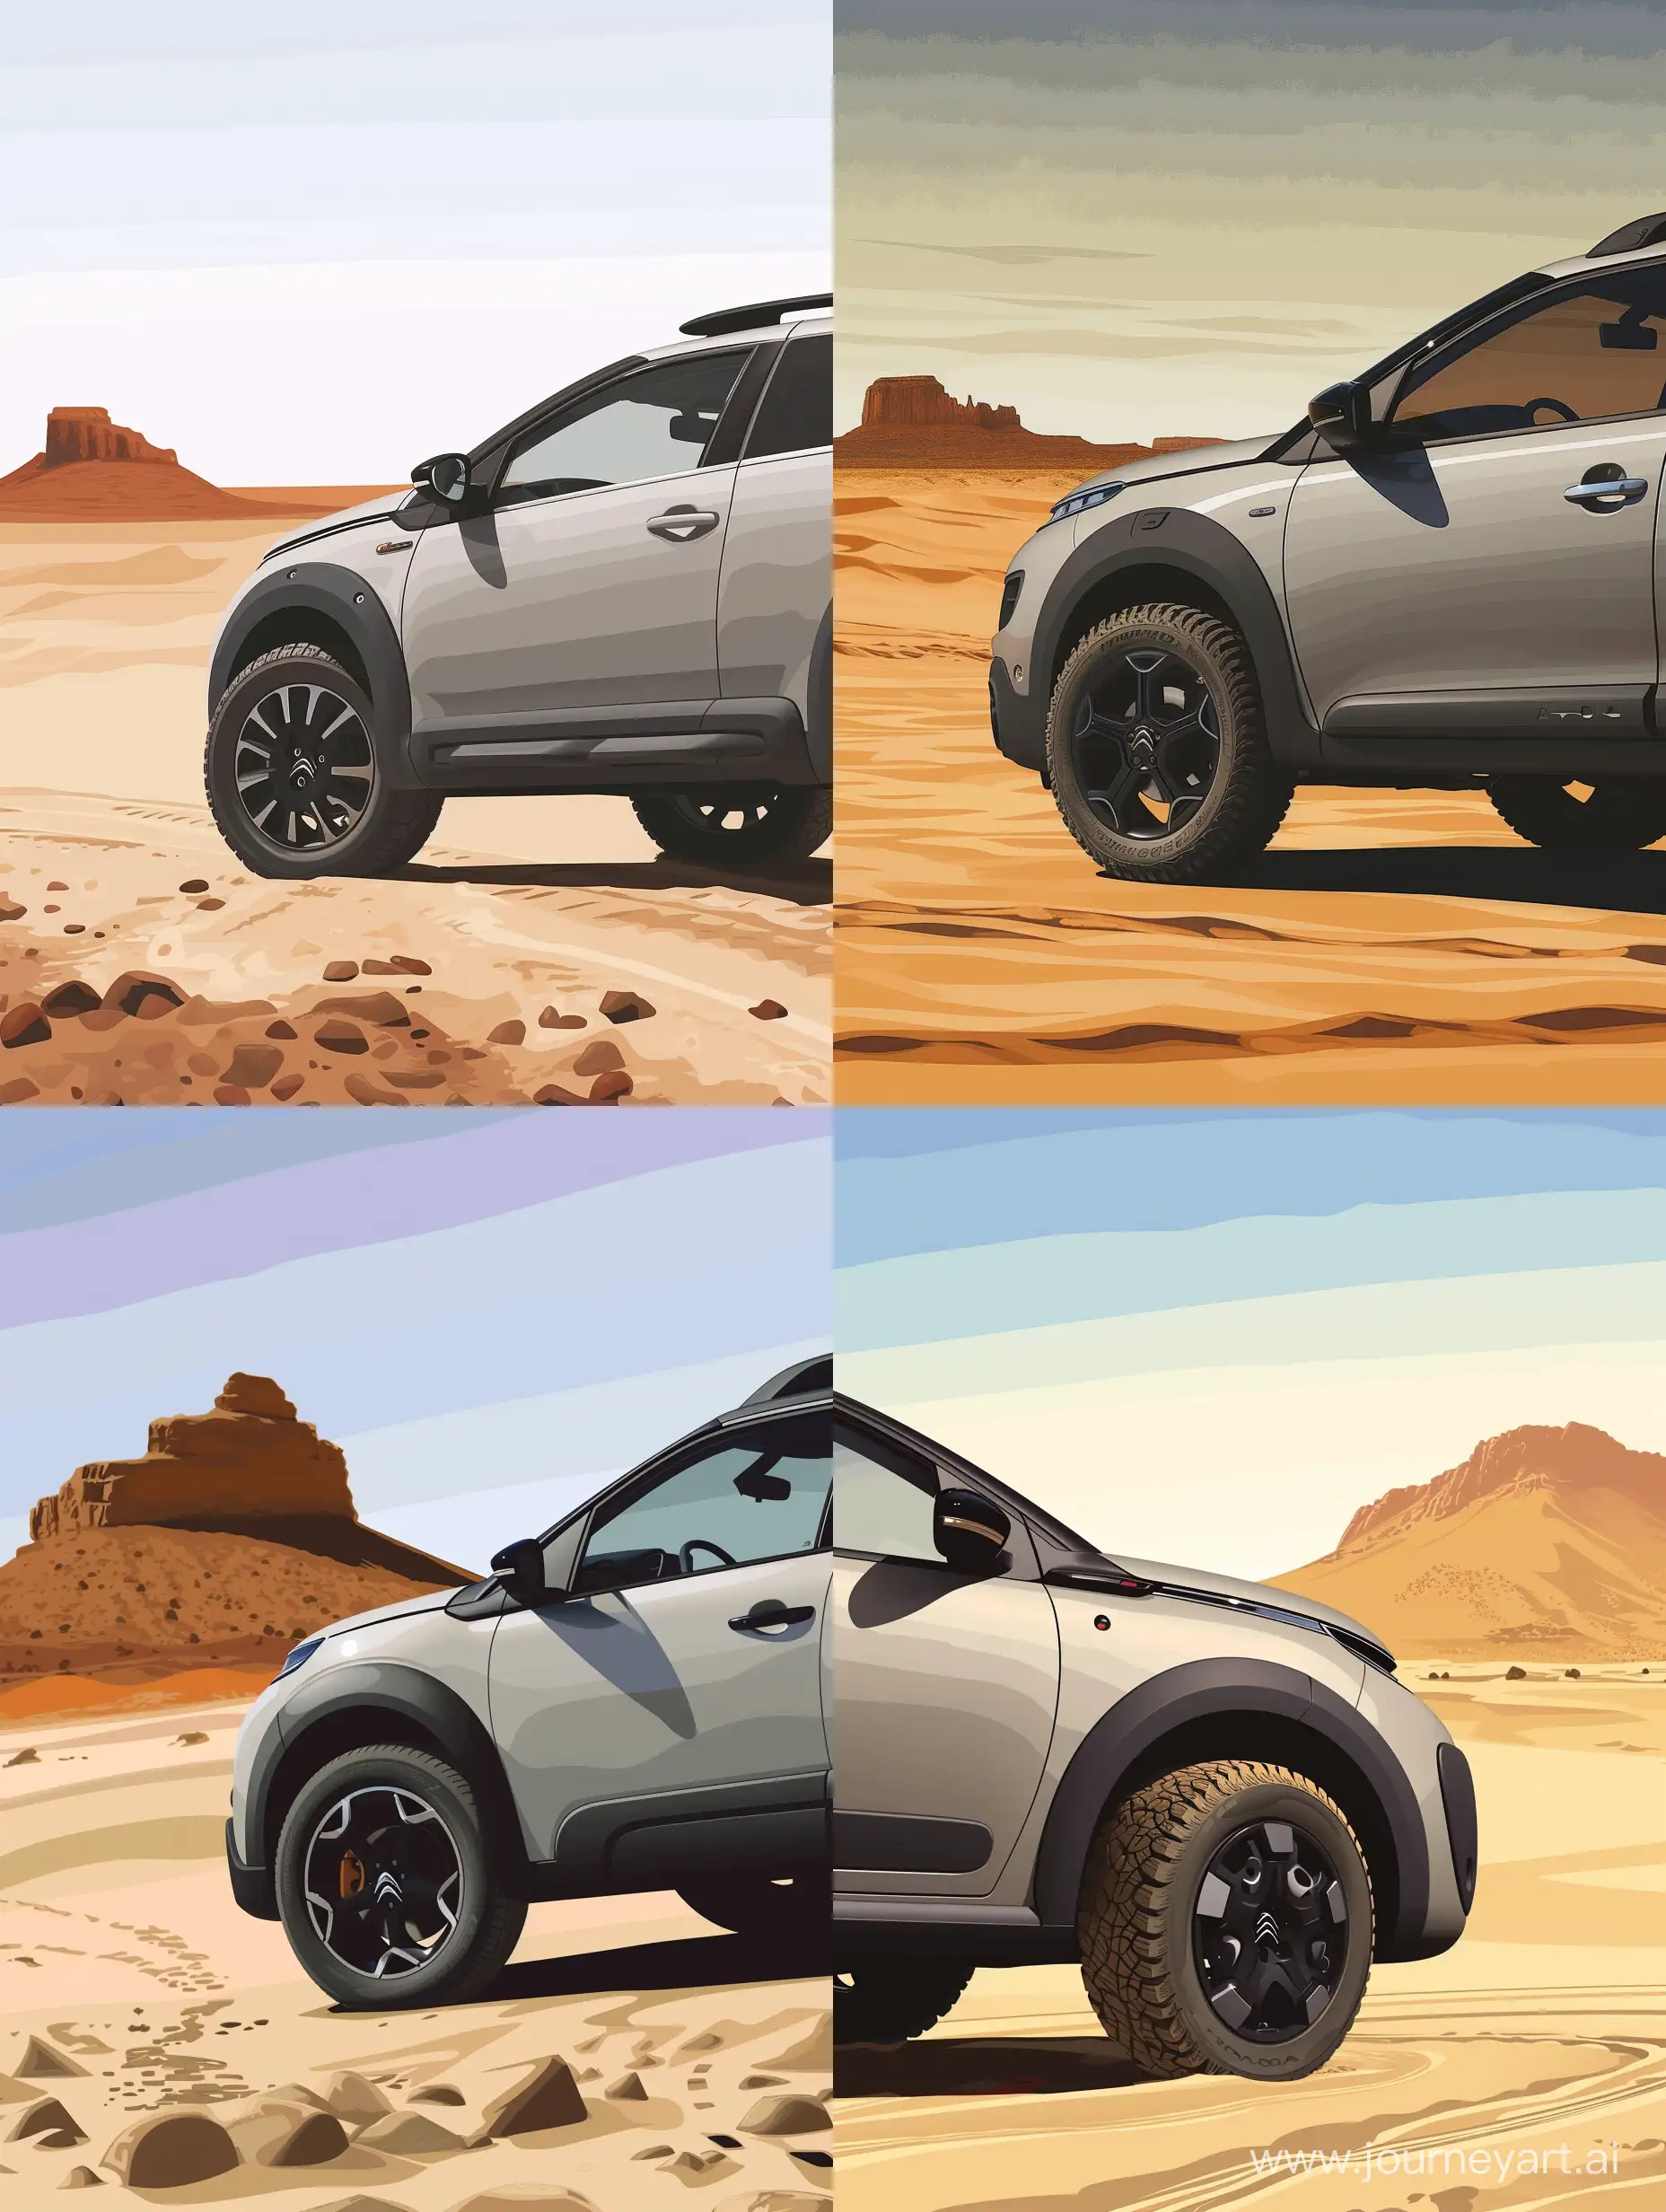 Silver-Gray-2015-Model-Citroen-C4-Cactus-in-Desert-Illustration-Wallpaper